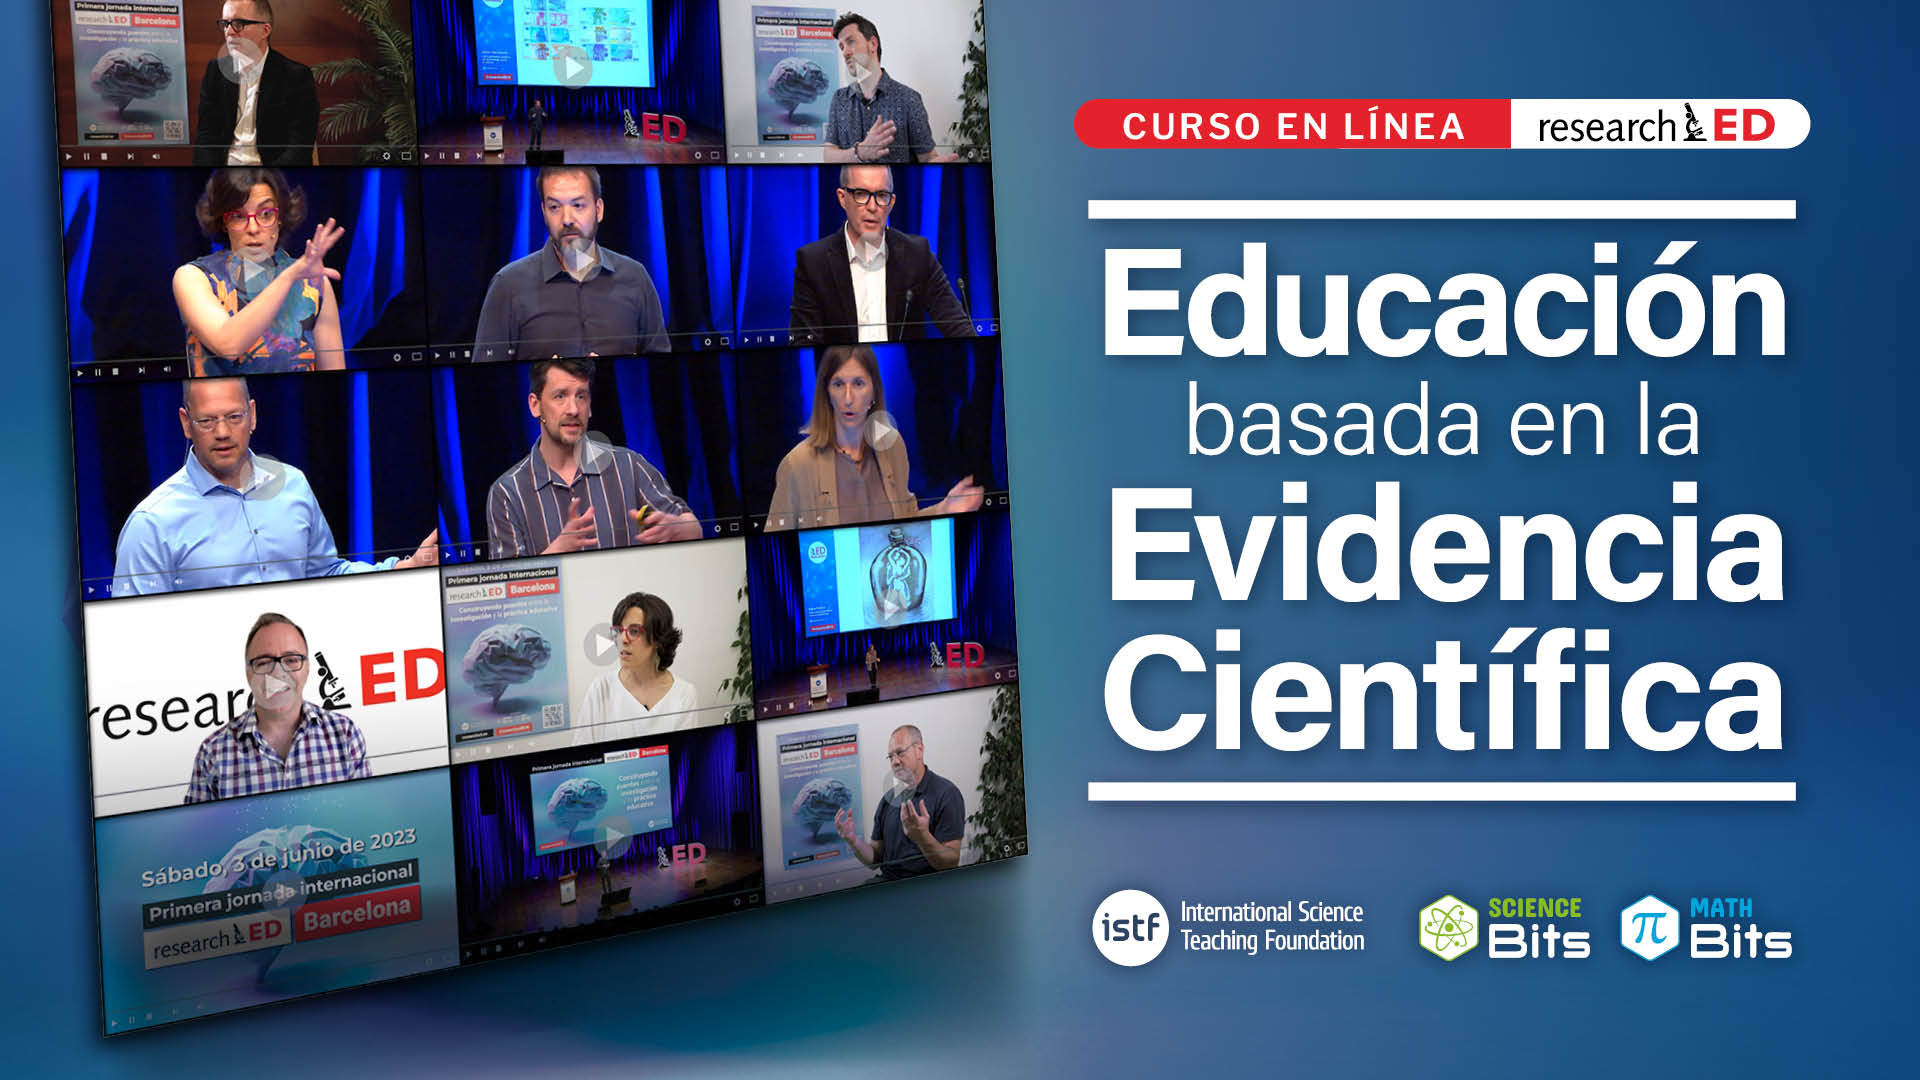 Curso en línea researchED: Educación basada en la Evidencia Científica